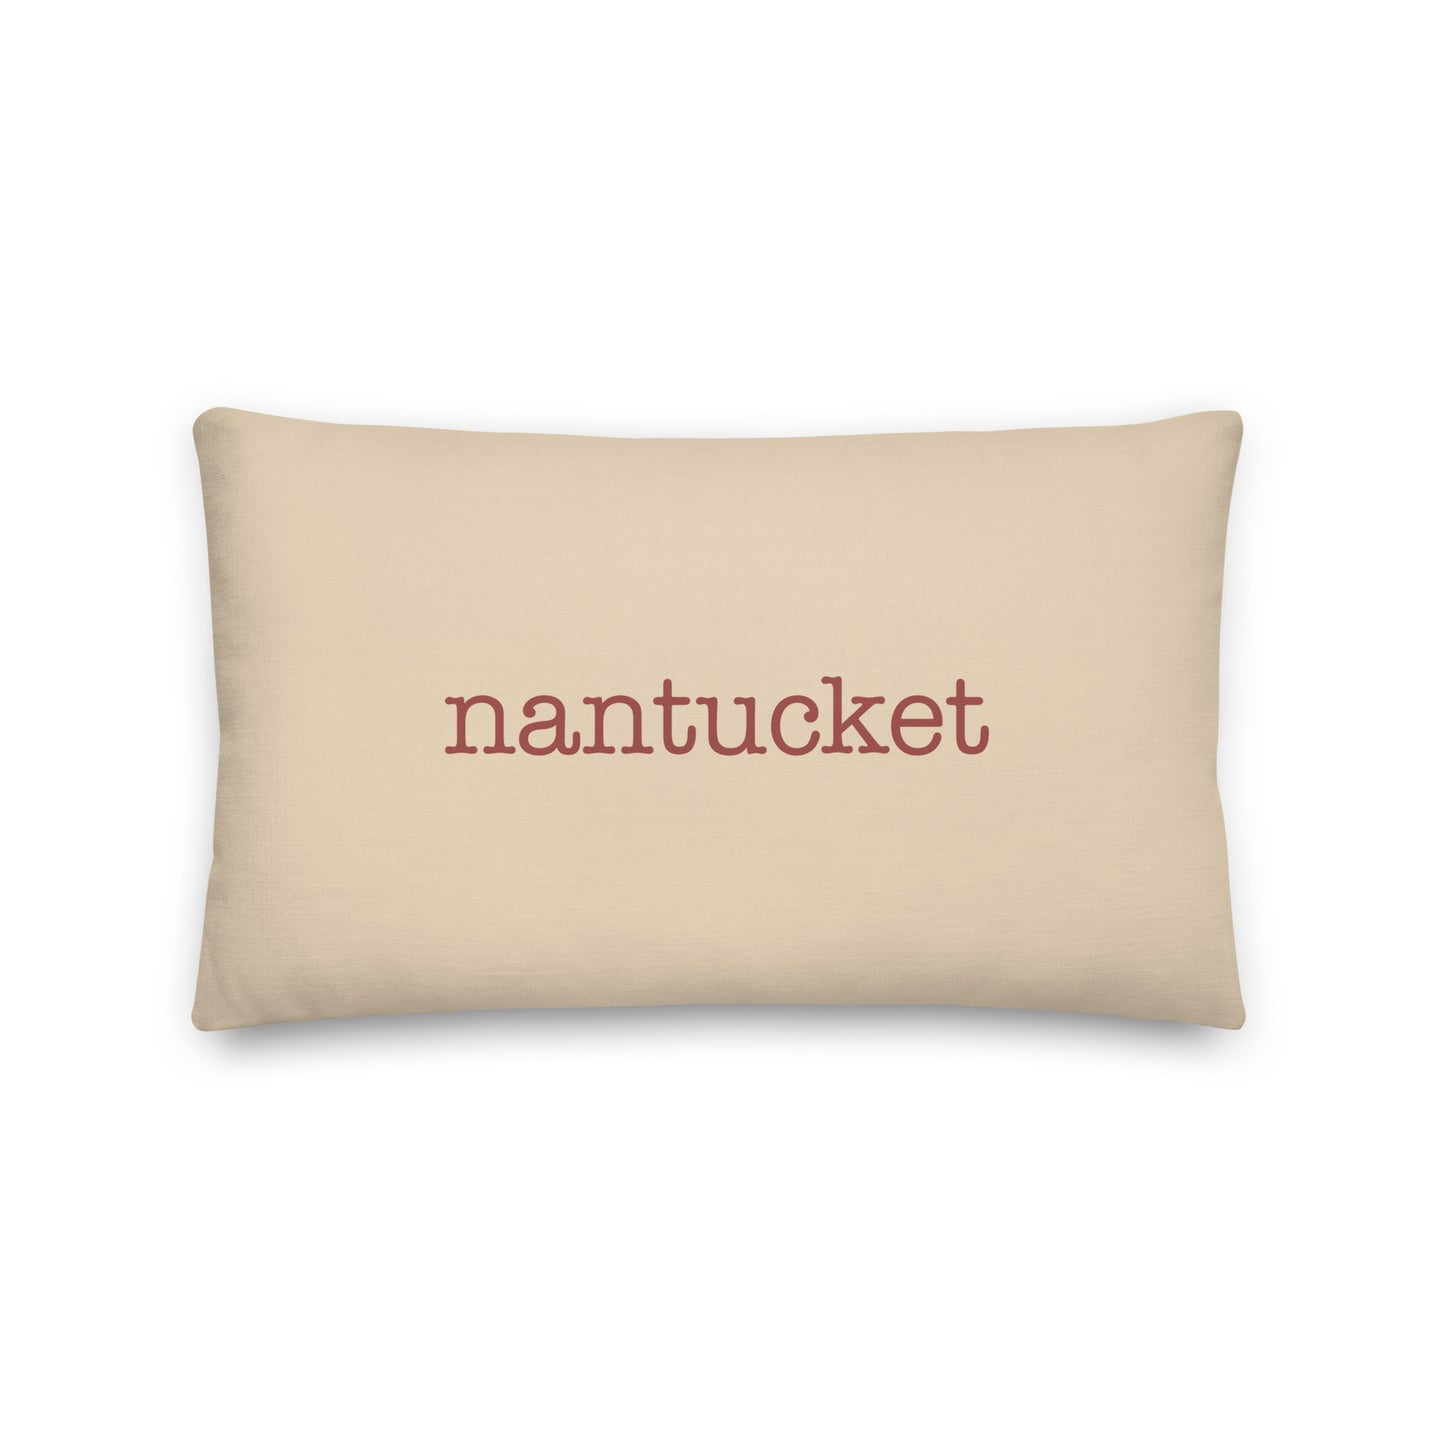 Typewriter Pillow - Terra Cotta • ACK Nantucket • YHM Designs - Image 01